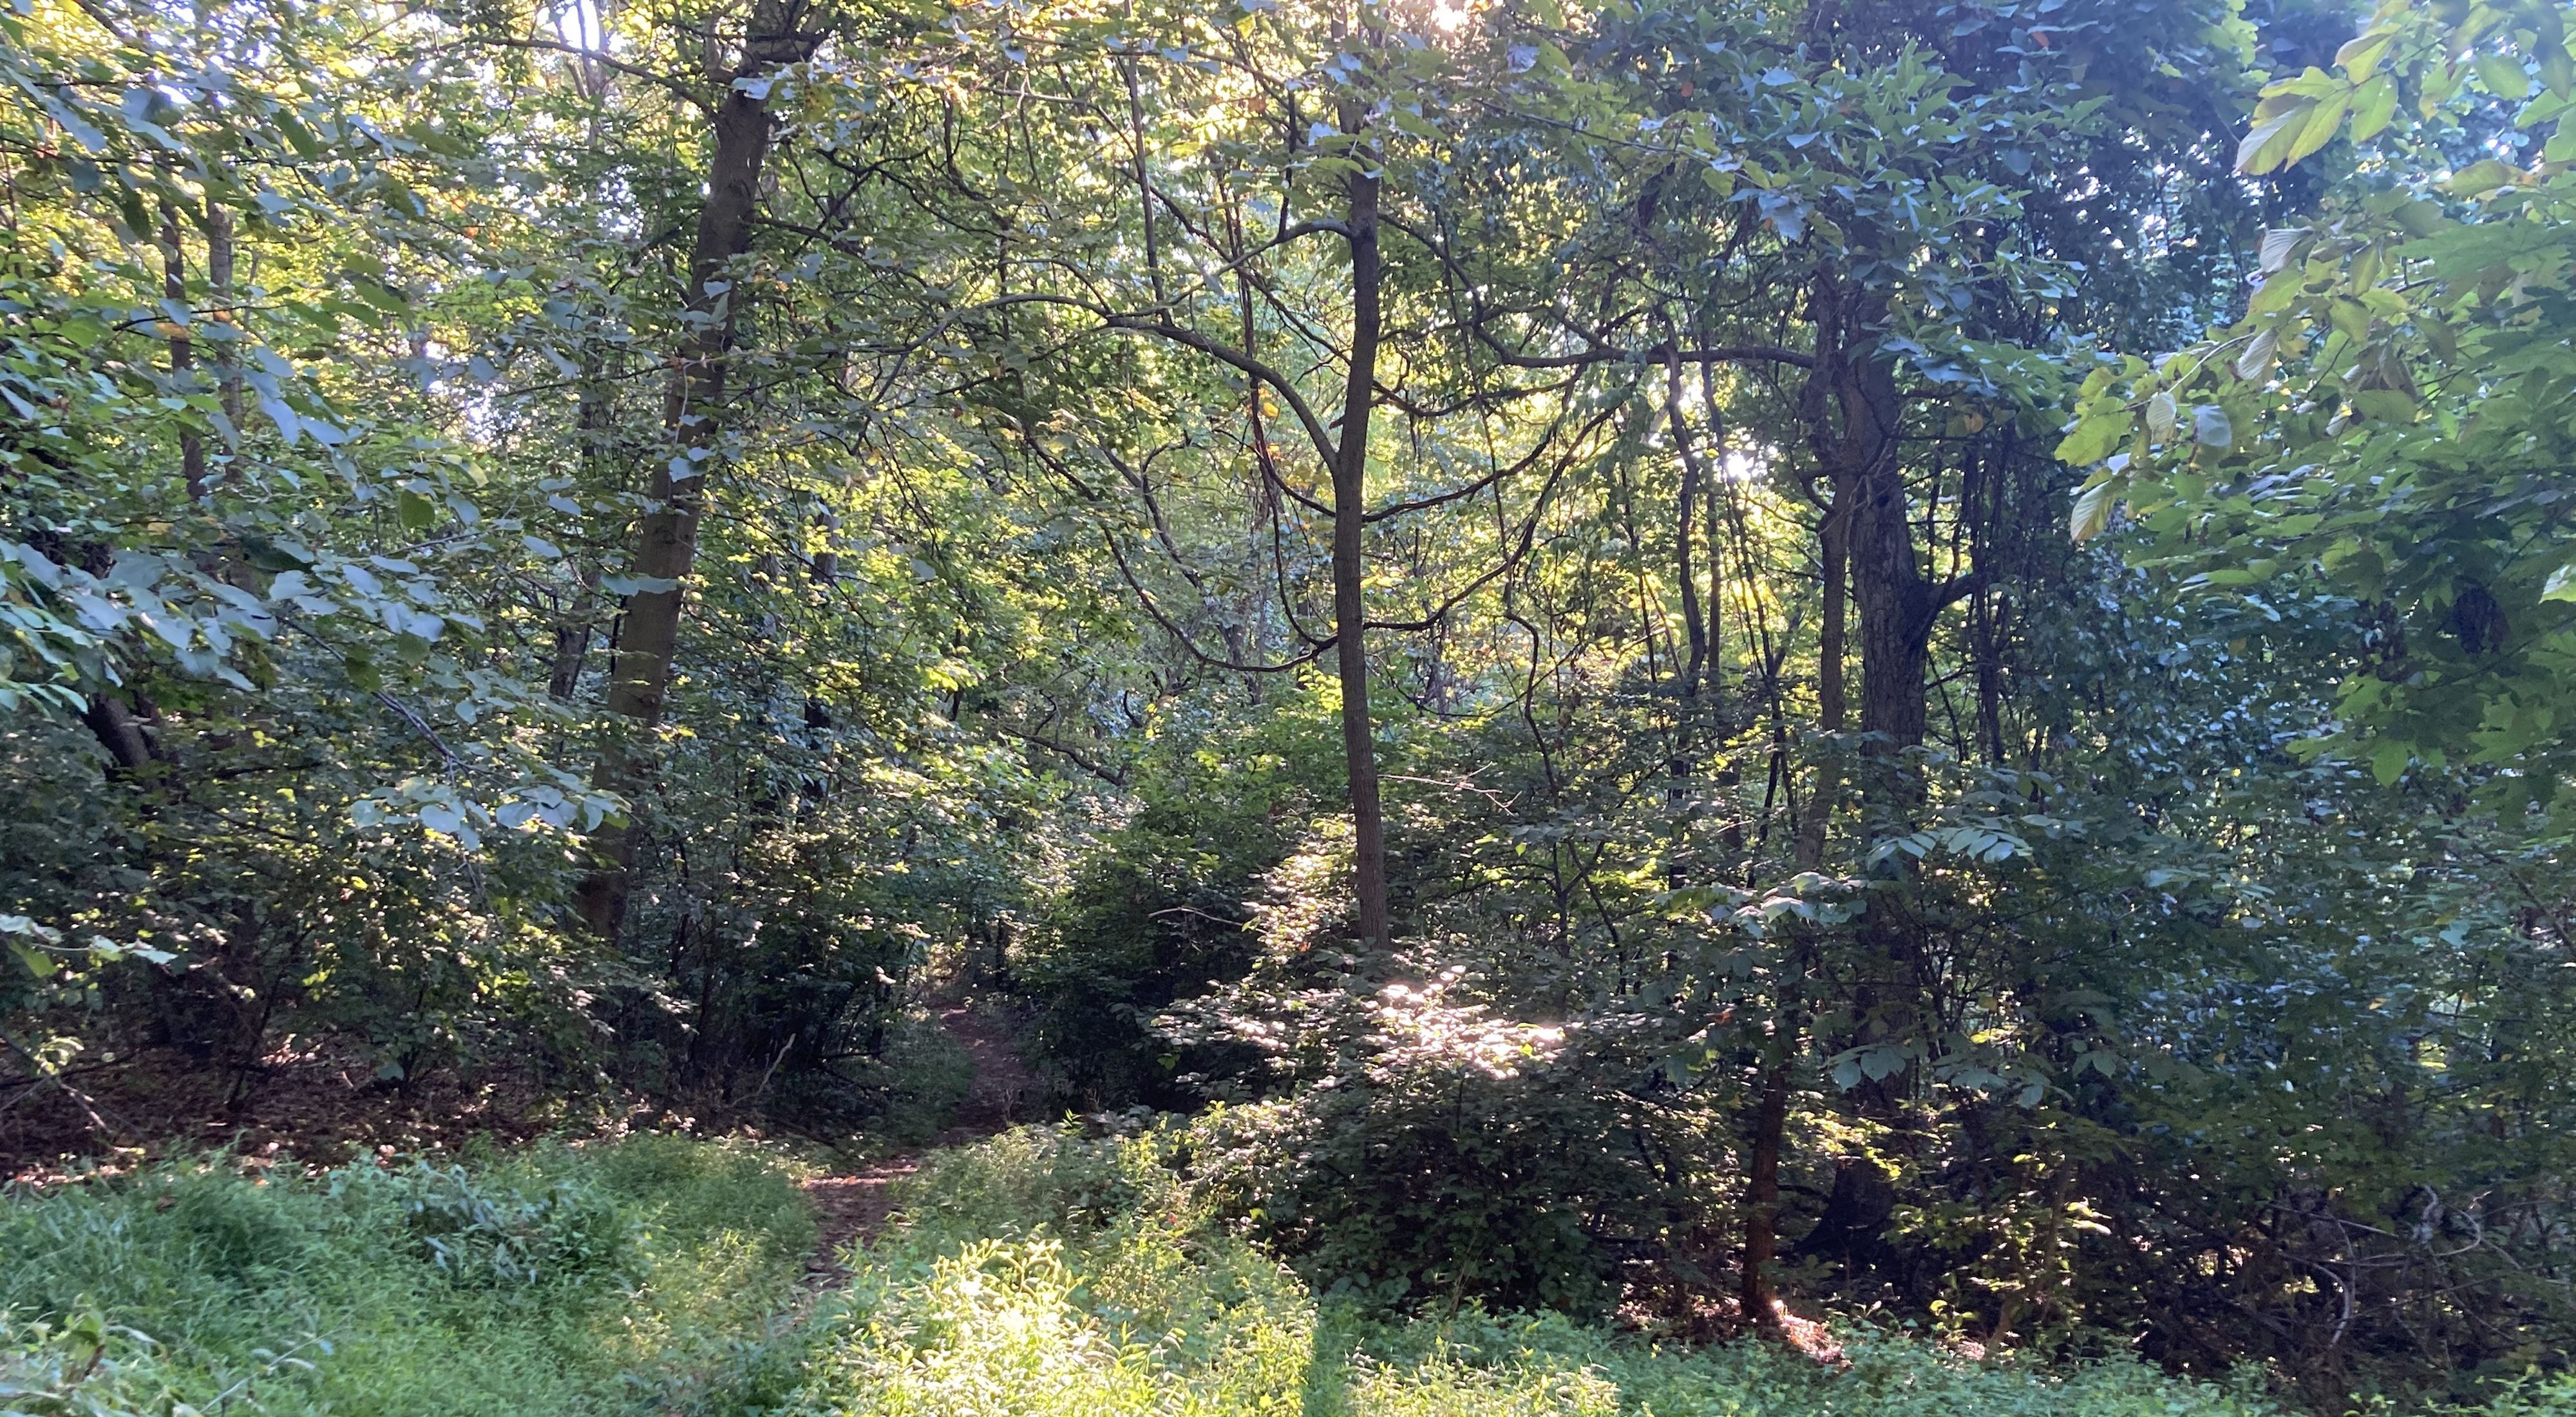 A cleared path cuts through a dense forest.